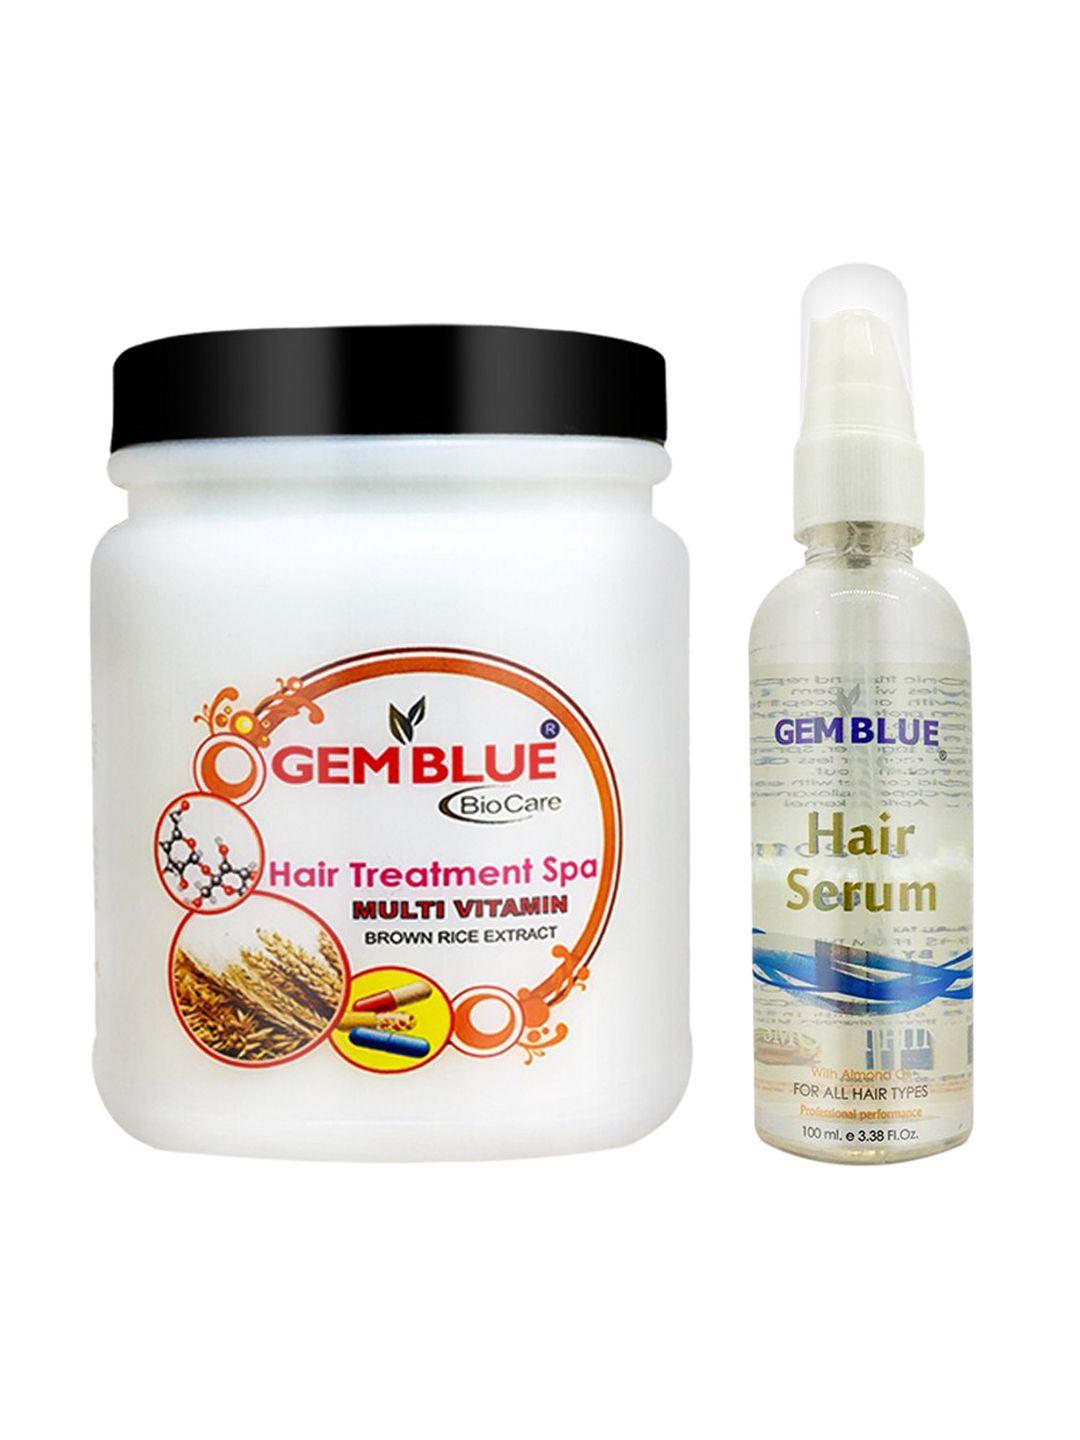 gemblue biocare set of 2 multi vitamin hair spa & silver hair serum